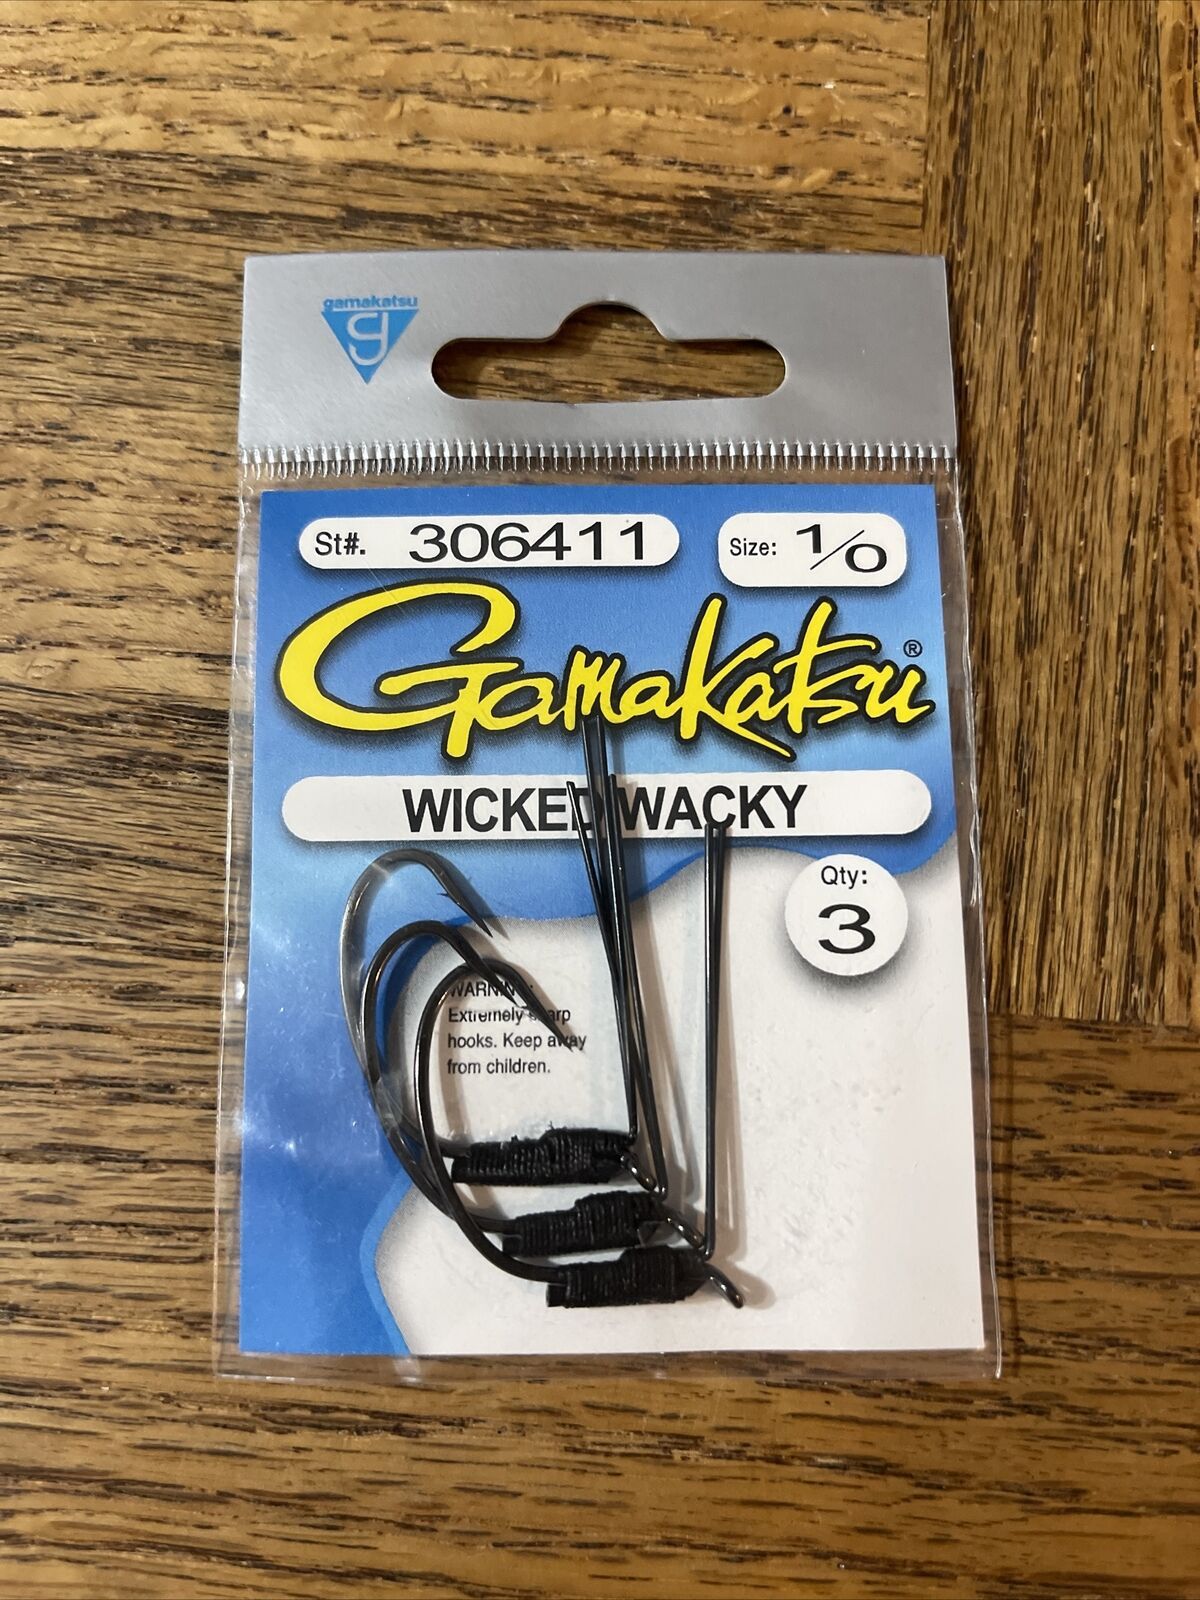 Gamakatsu Wicked Wacky Hook Size 1/0